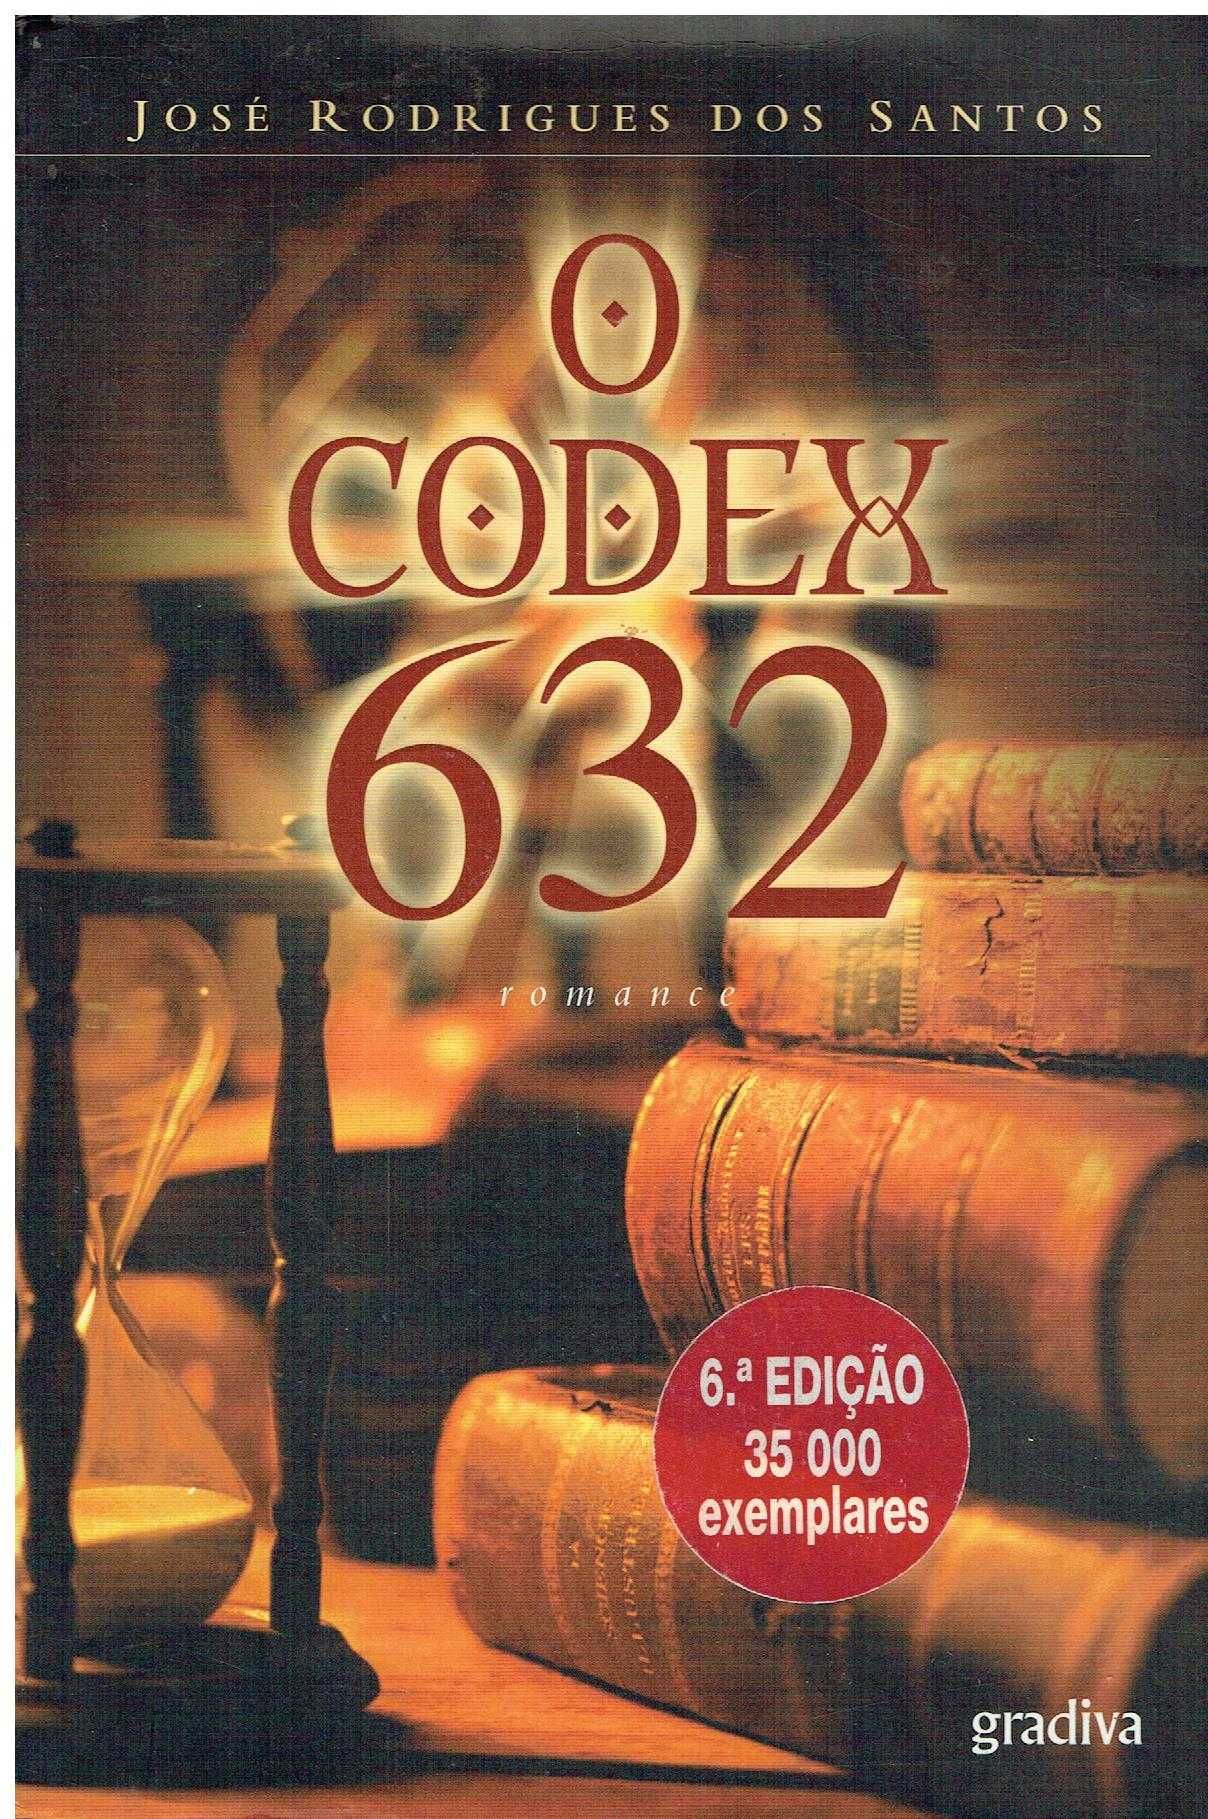 6168

O Codex 632
de José Rodrigues dos Santos